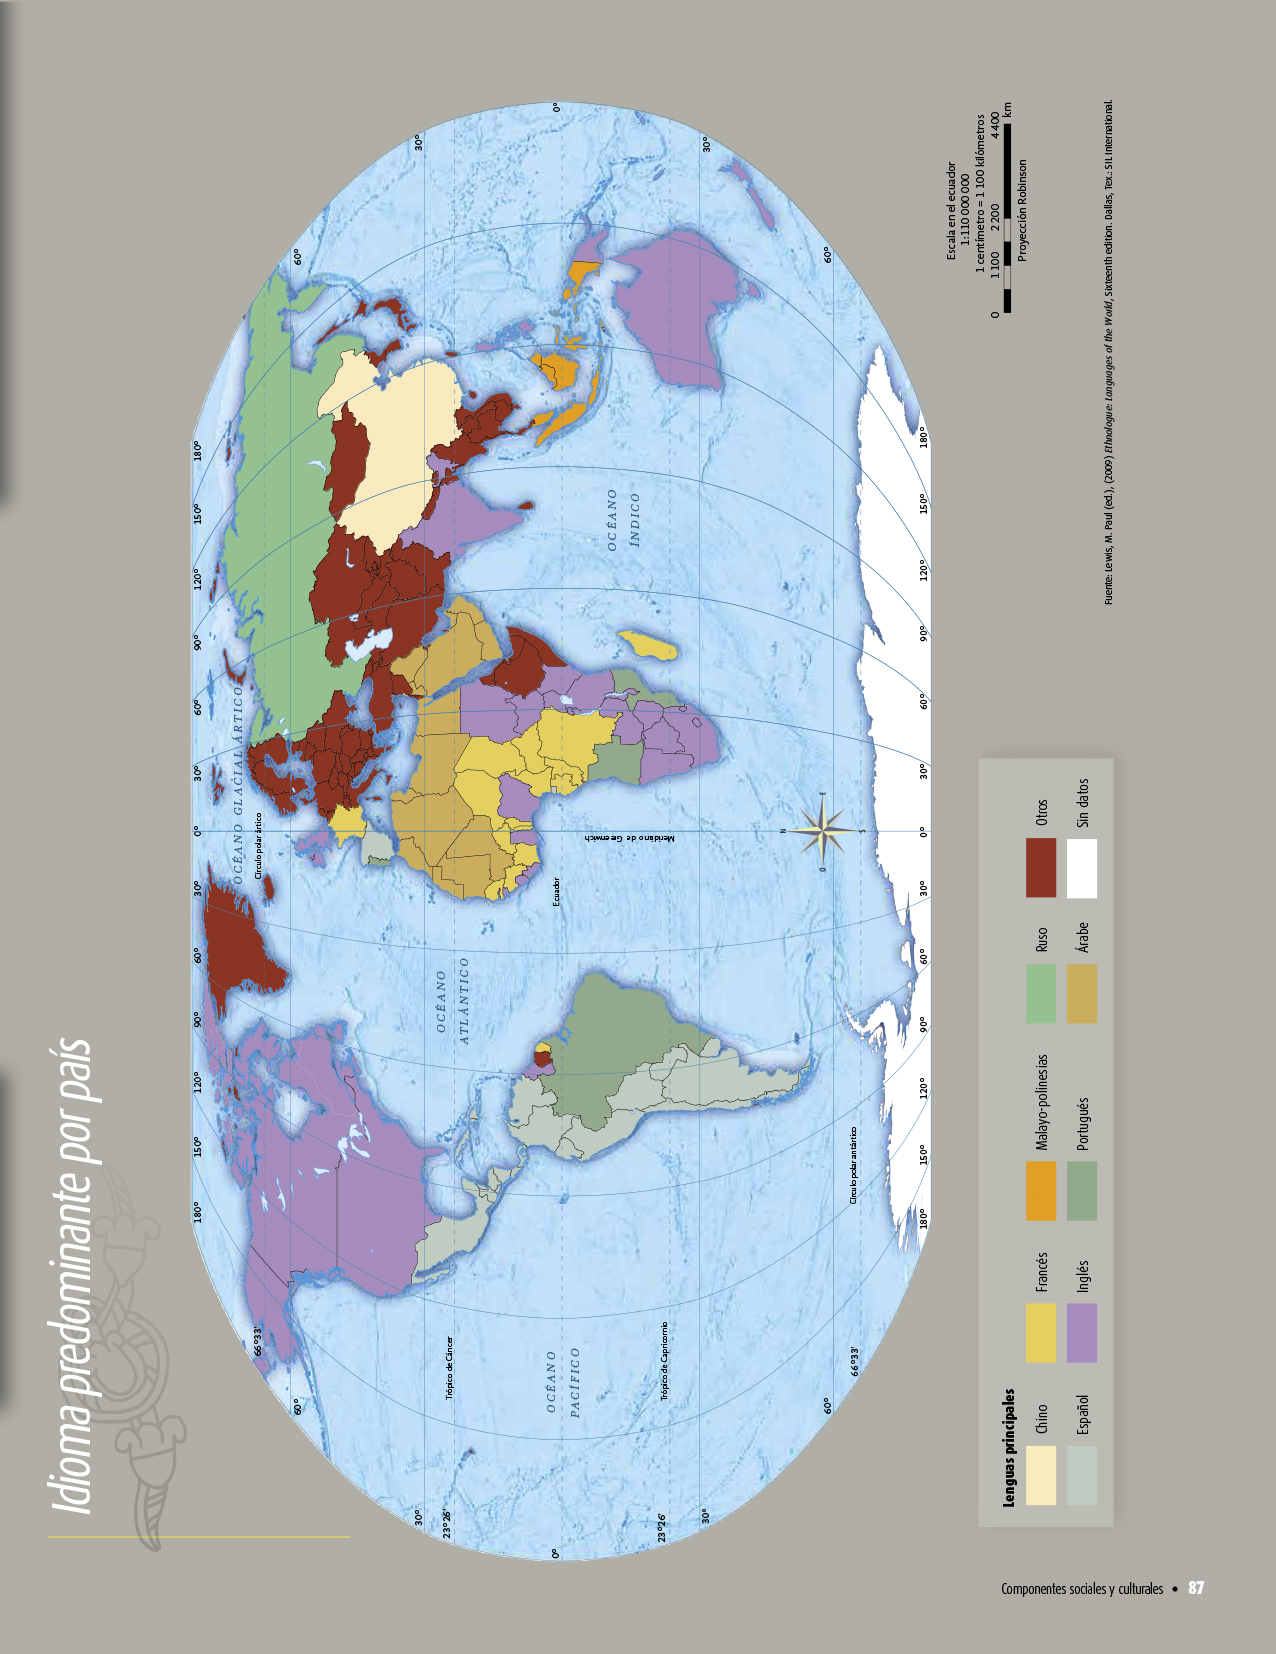 Atlas De Geografia Del Mundo Quinto Grado 2017 2018 Pagina 87 De 122 Libros De Texto Online